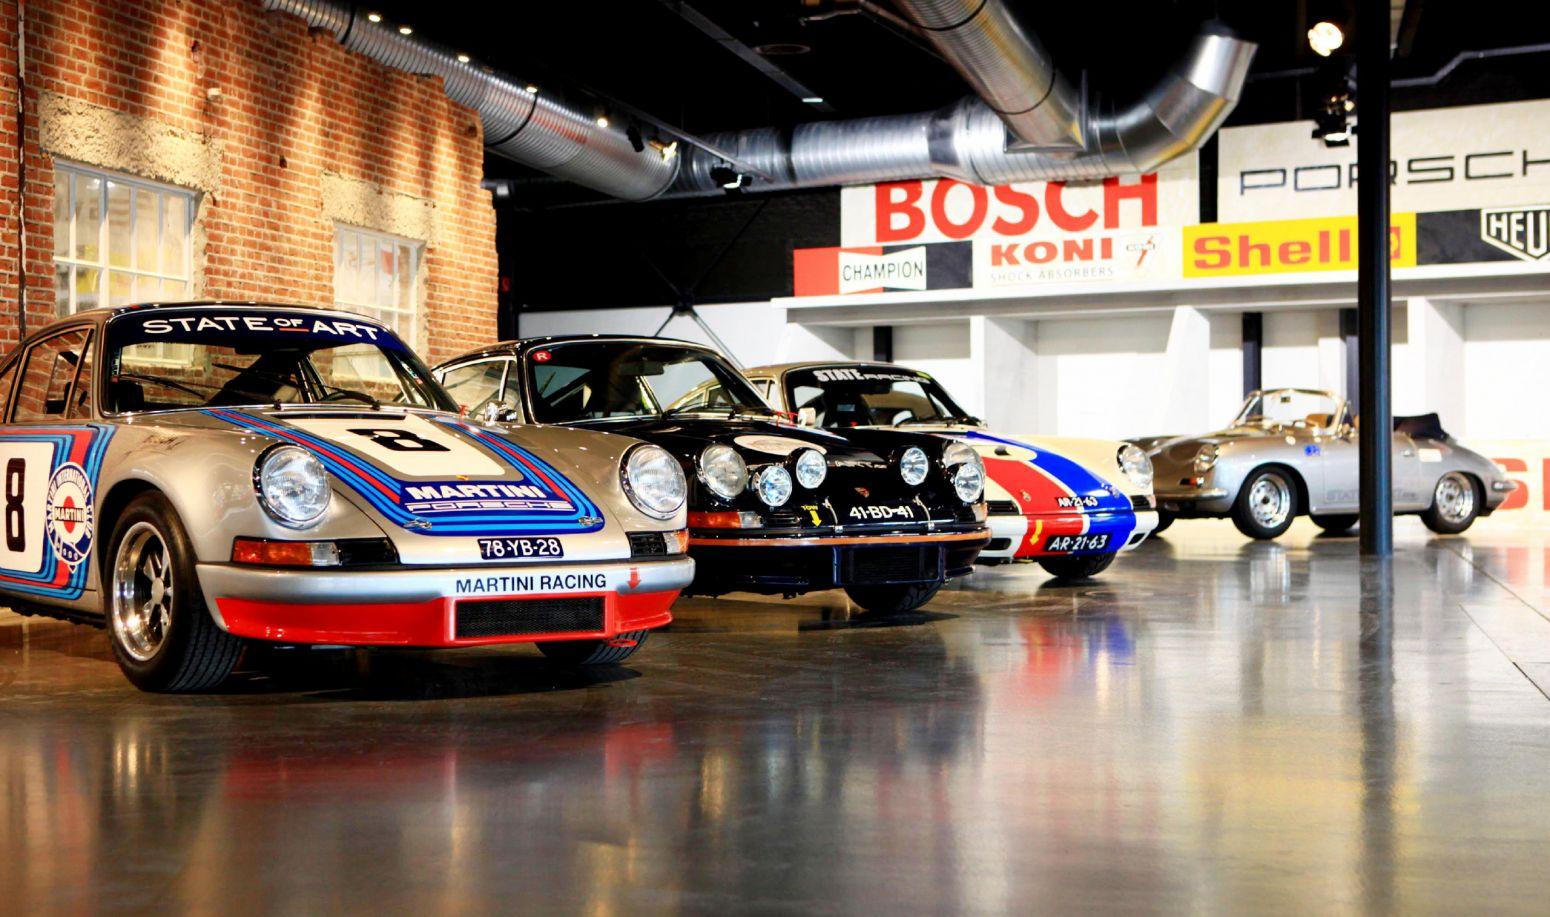 Planeet Beleefd Heiligdom Bijzondere Porsche collectie van State of Art naar eerste AMK Festival –  Oldtimers in Auto Motor Klassiek